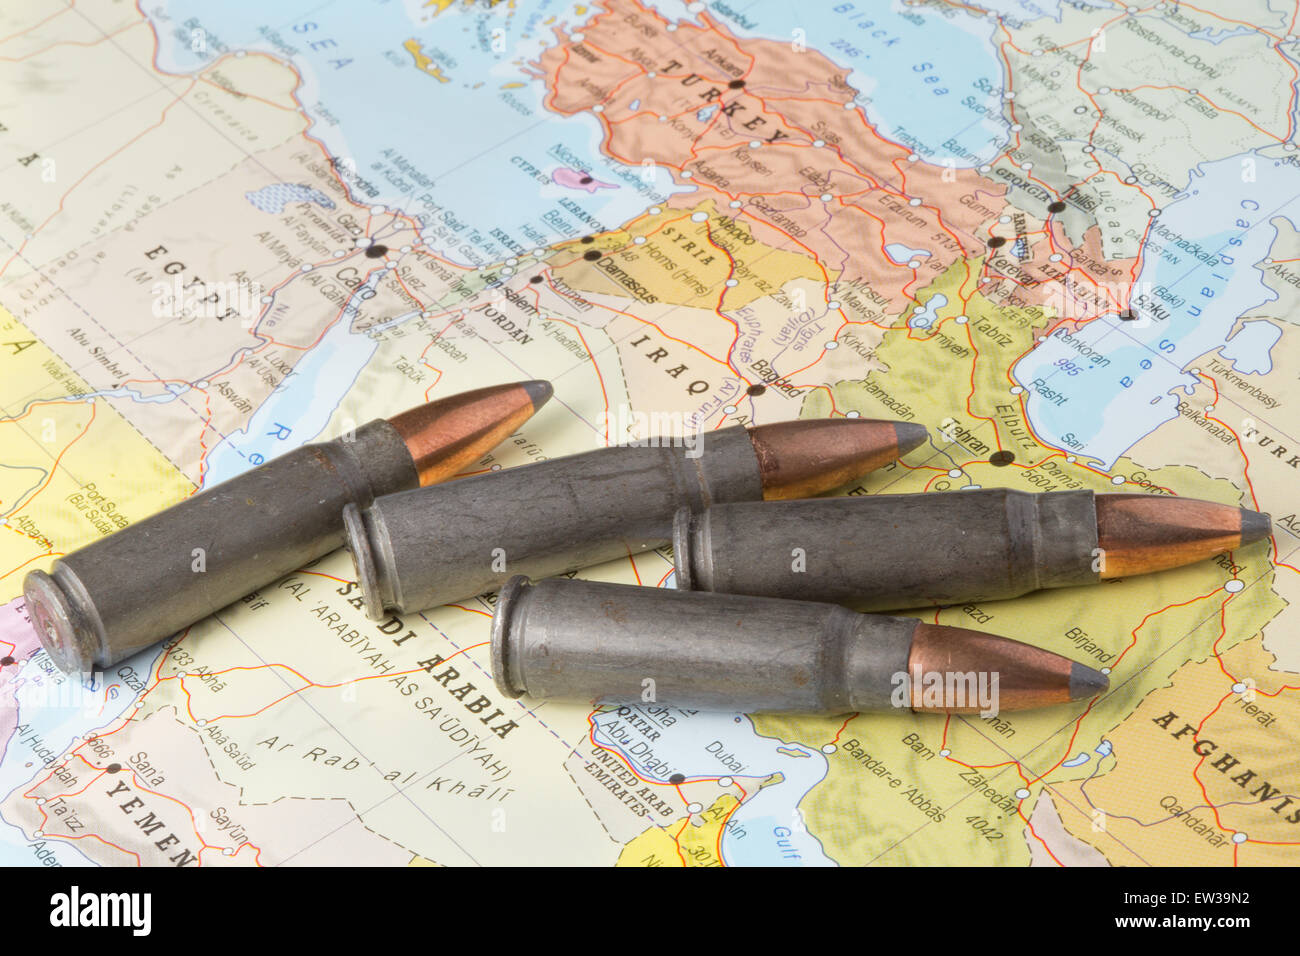 Quatre balles sur la carte géographique de l'Irak, la Syrie au Moyen Orient. Image conceptuelle pour la guerre, les conflits, la violence. Banque D'Images